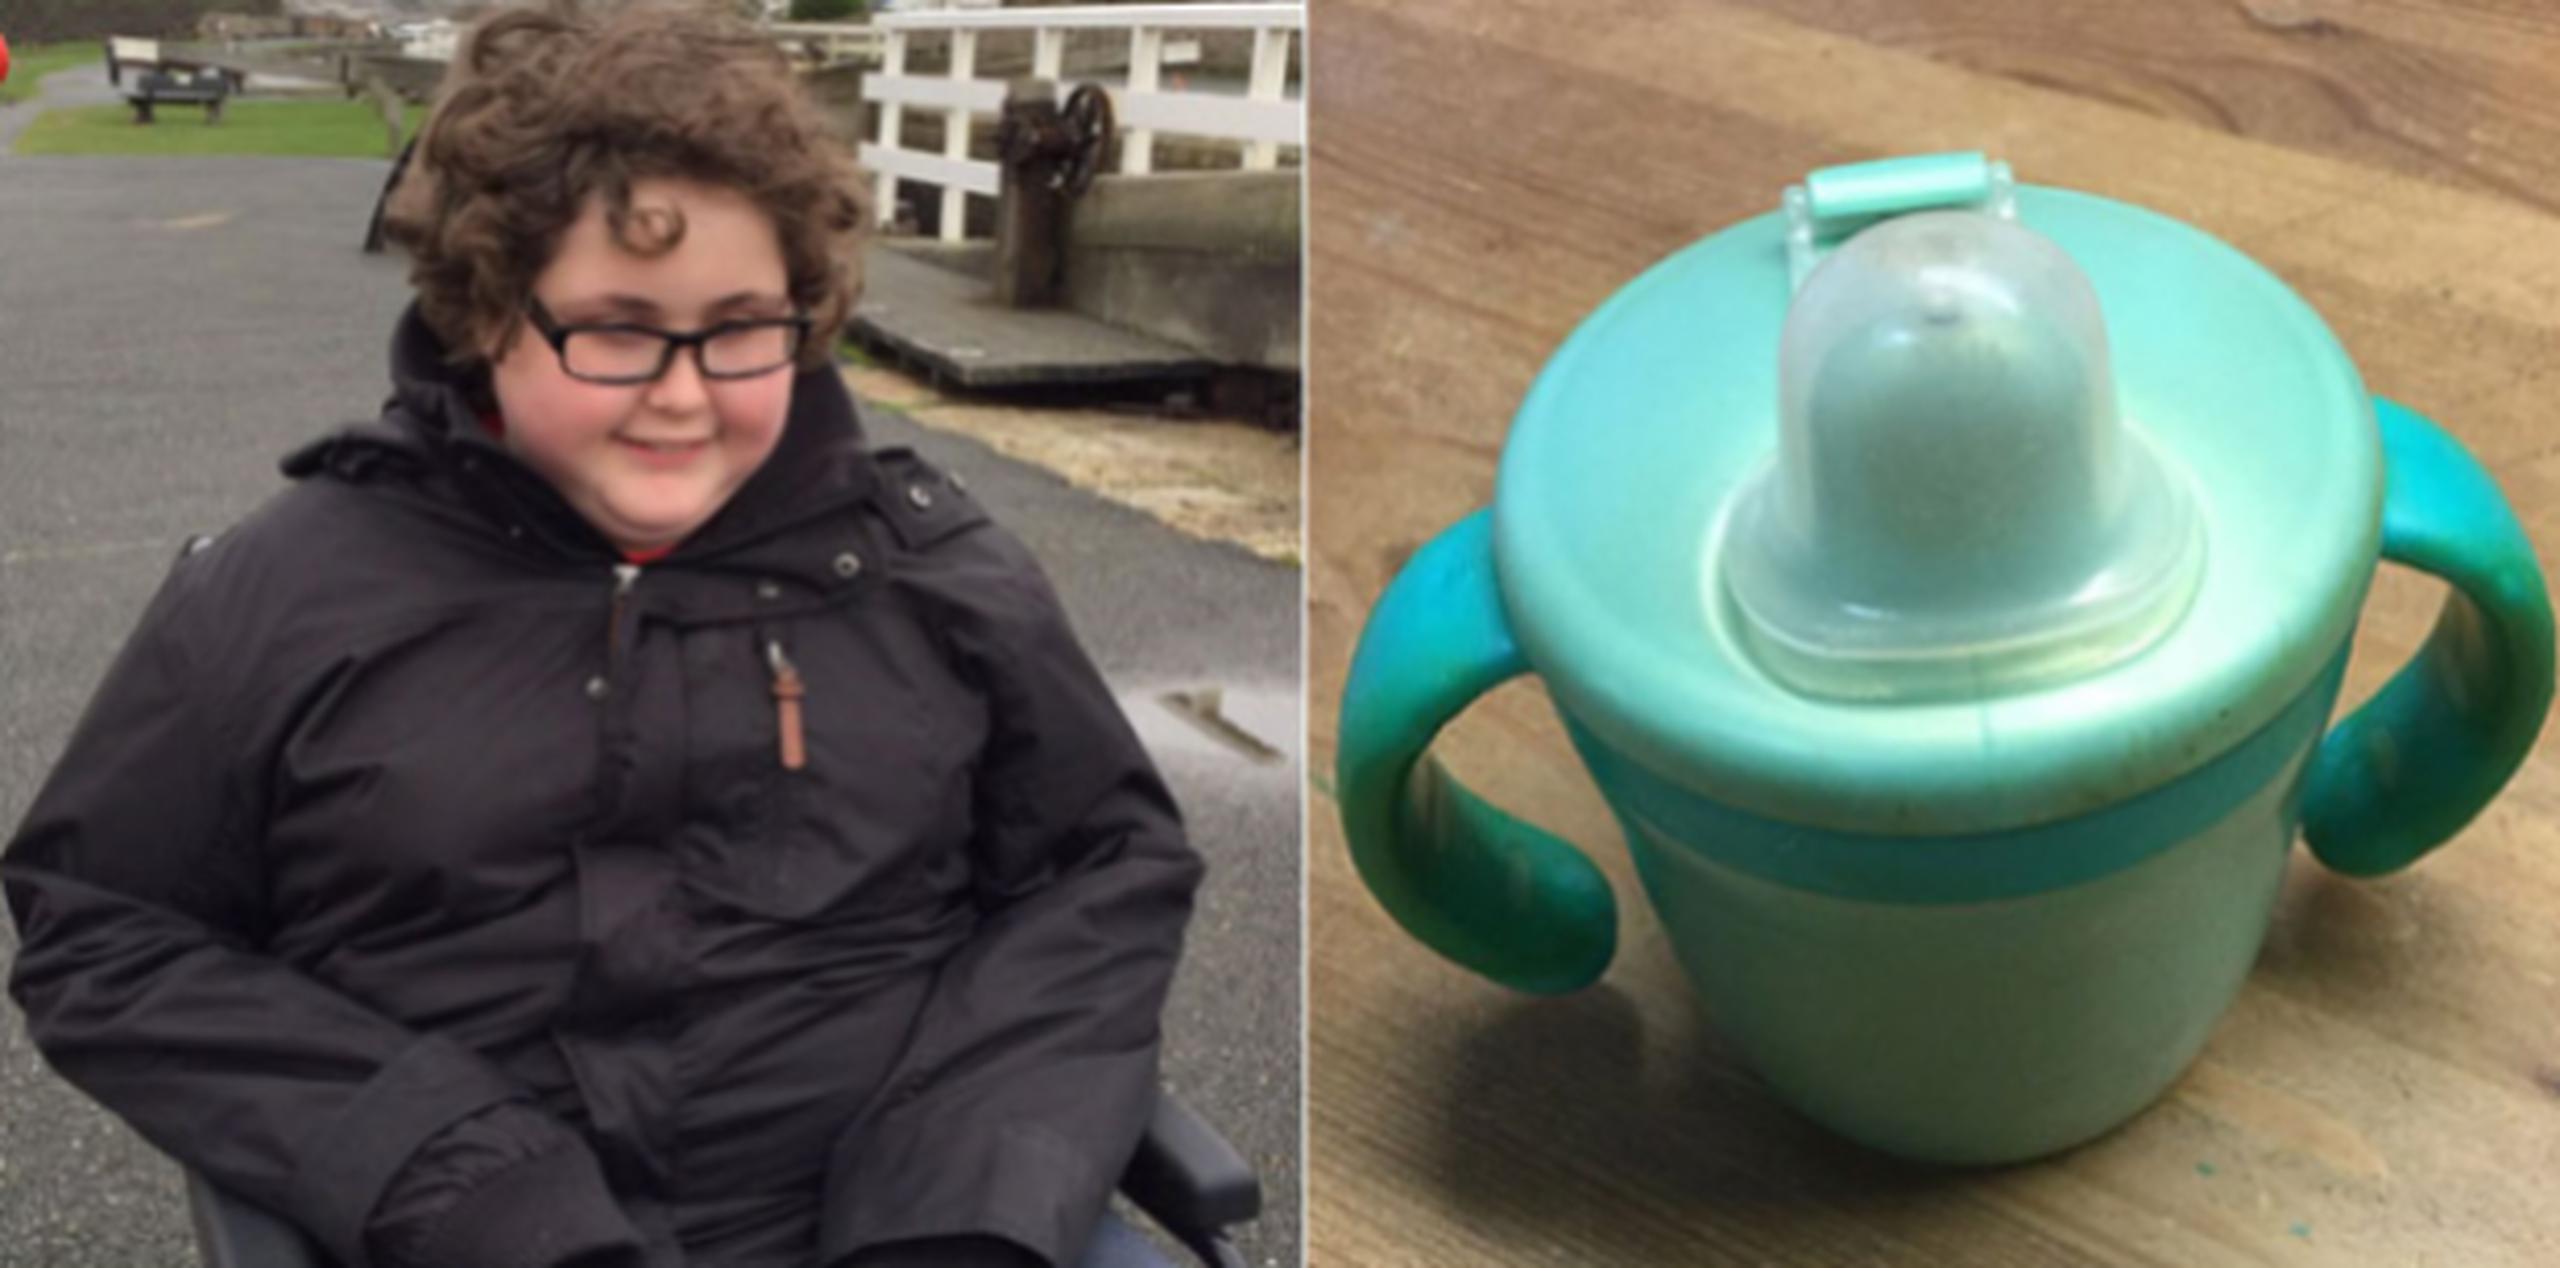 El niño desarrolló una verdadera obsesión por una taza plástica con boquilla muy específica, que usa para beber líquidos desde que tenía dos años.  (Emol)
